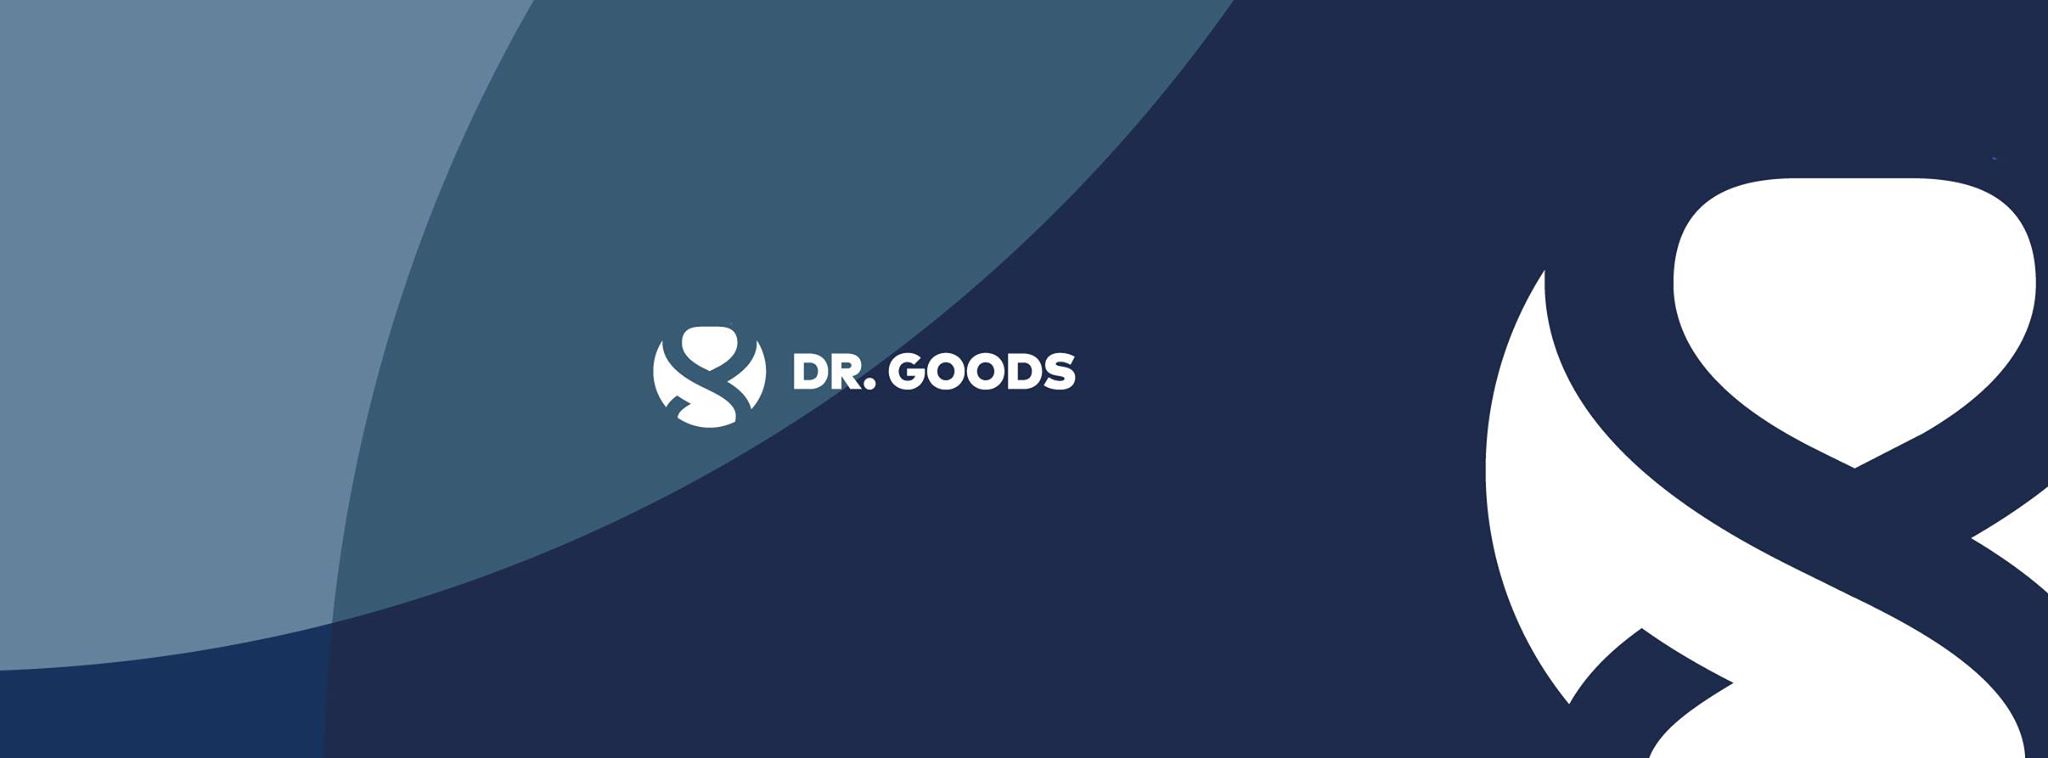 სიუჟეტი “დოქტორ გუდსი/Dr. Goods”-ის ოფიციალური გახსნის შესახებ